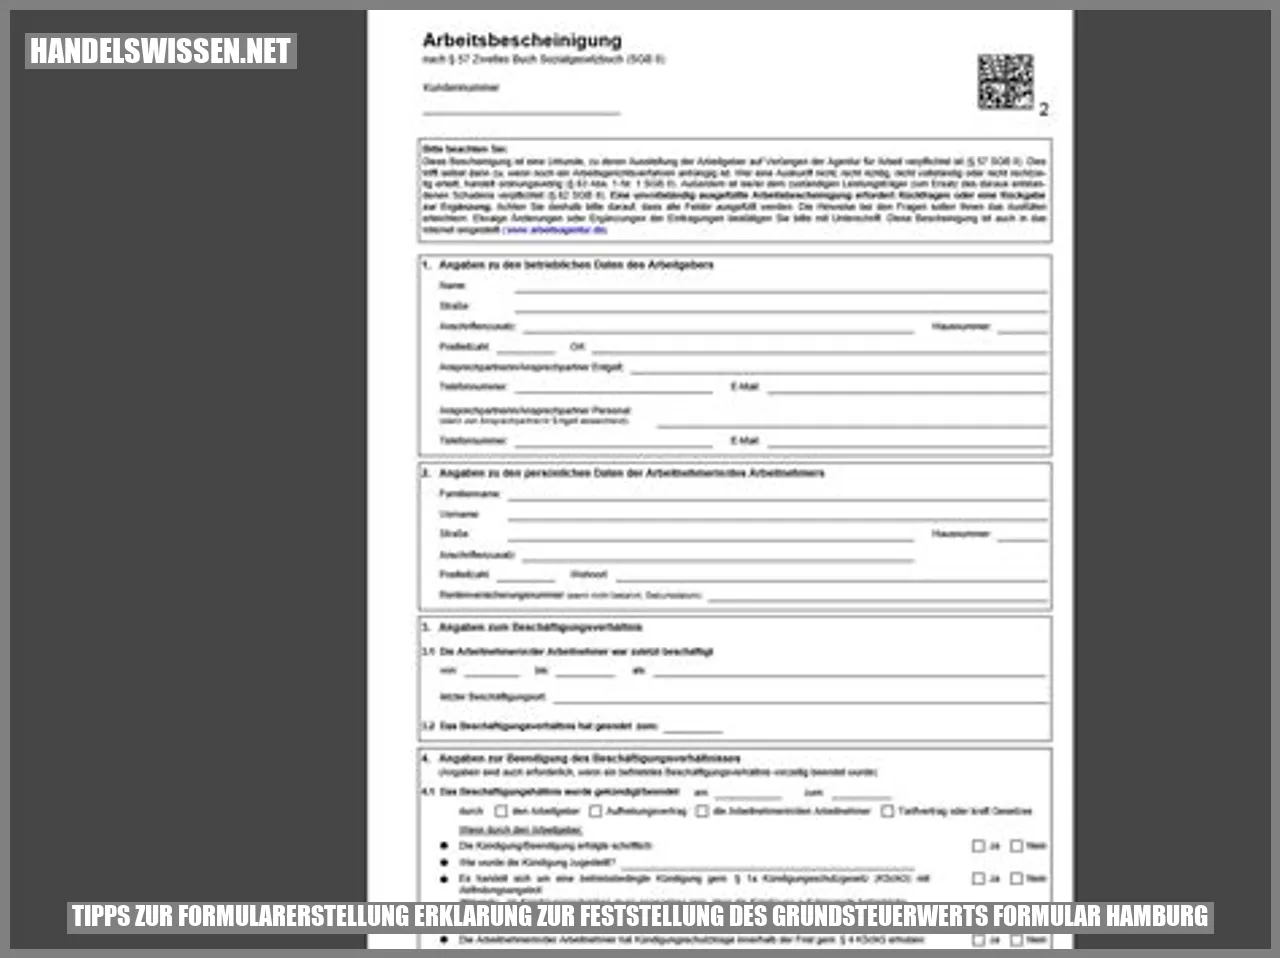 Bild: Tipps zur Formularerstellung erklärung zur feststellung des Grundsteuerwerts Formular Hamburg